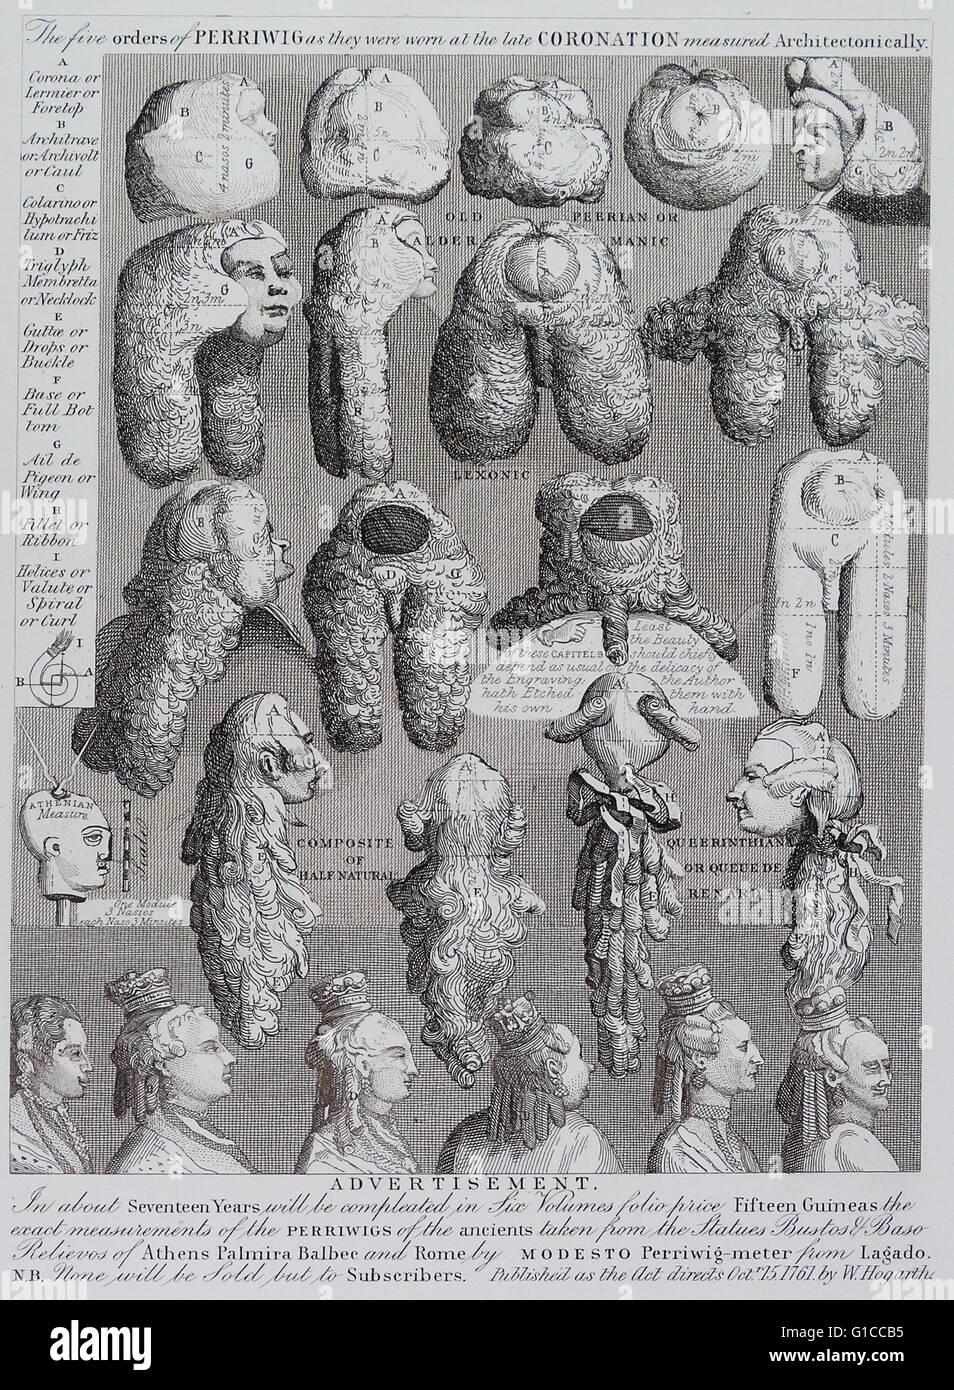 Die fünf Bestellungen Haarschnitten (die fünf Bestellungen von Haarschnitten, wie sie bei den spät Krönung gemessen architektonisch 1761 von William Hogarth (1697-1764) getragen wurden. Englischer Maler, Grafiker, bildhafte Satiriker. Stockfoto